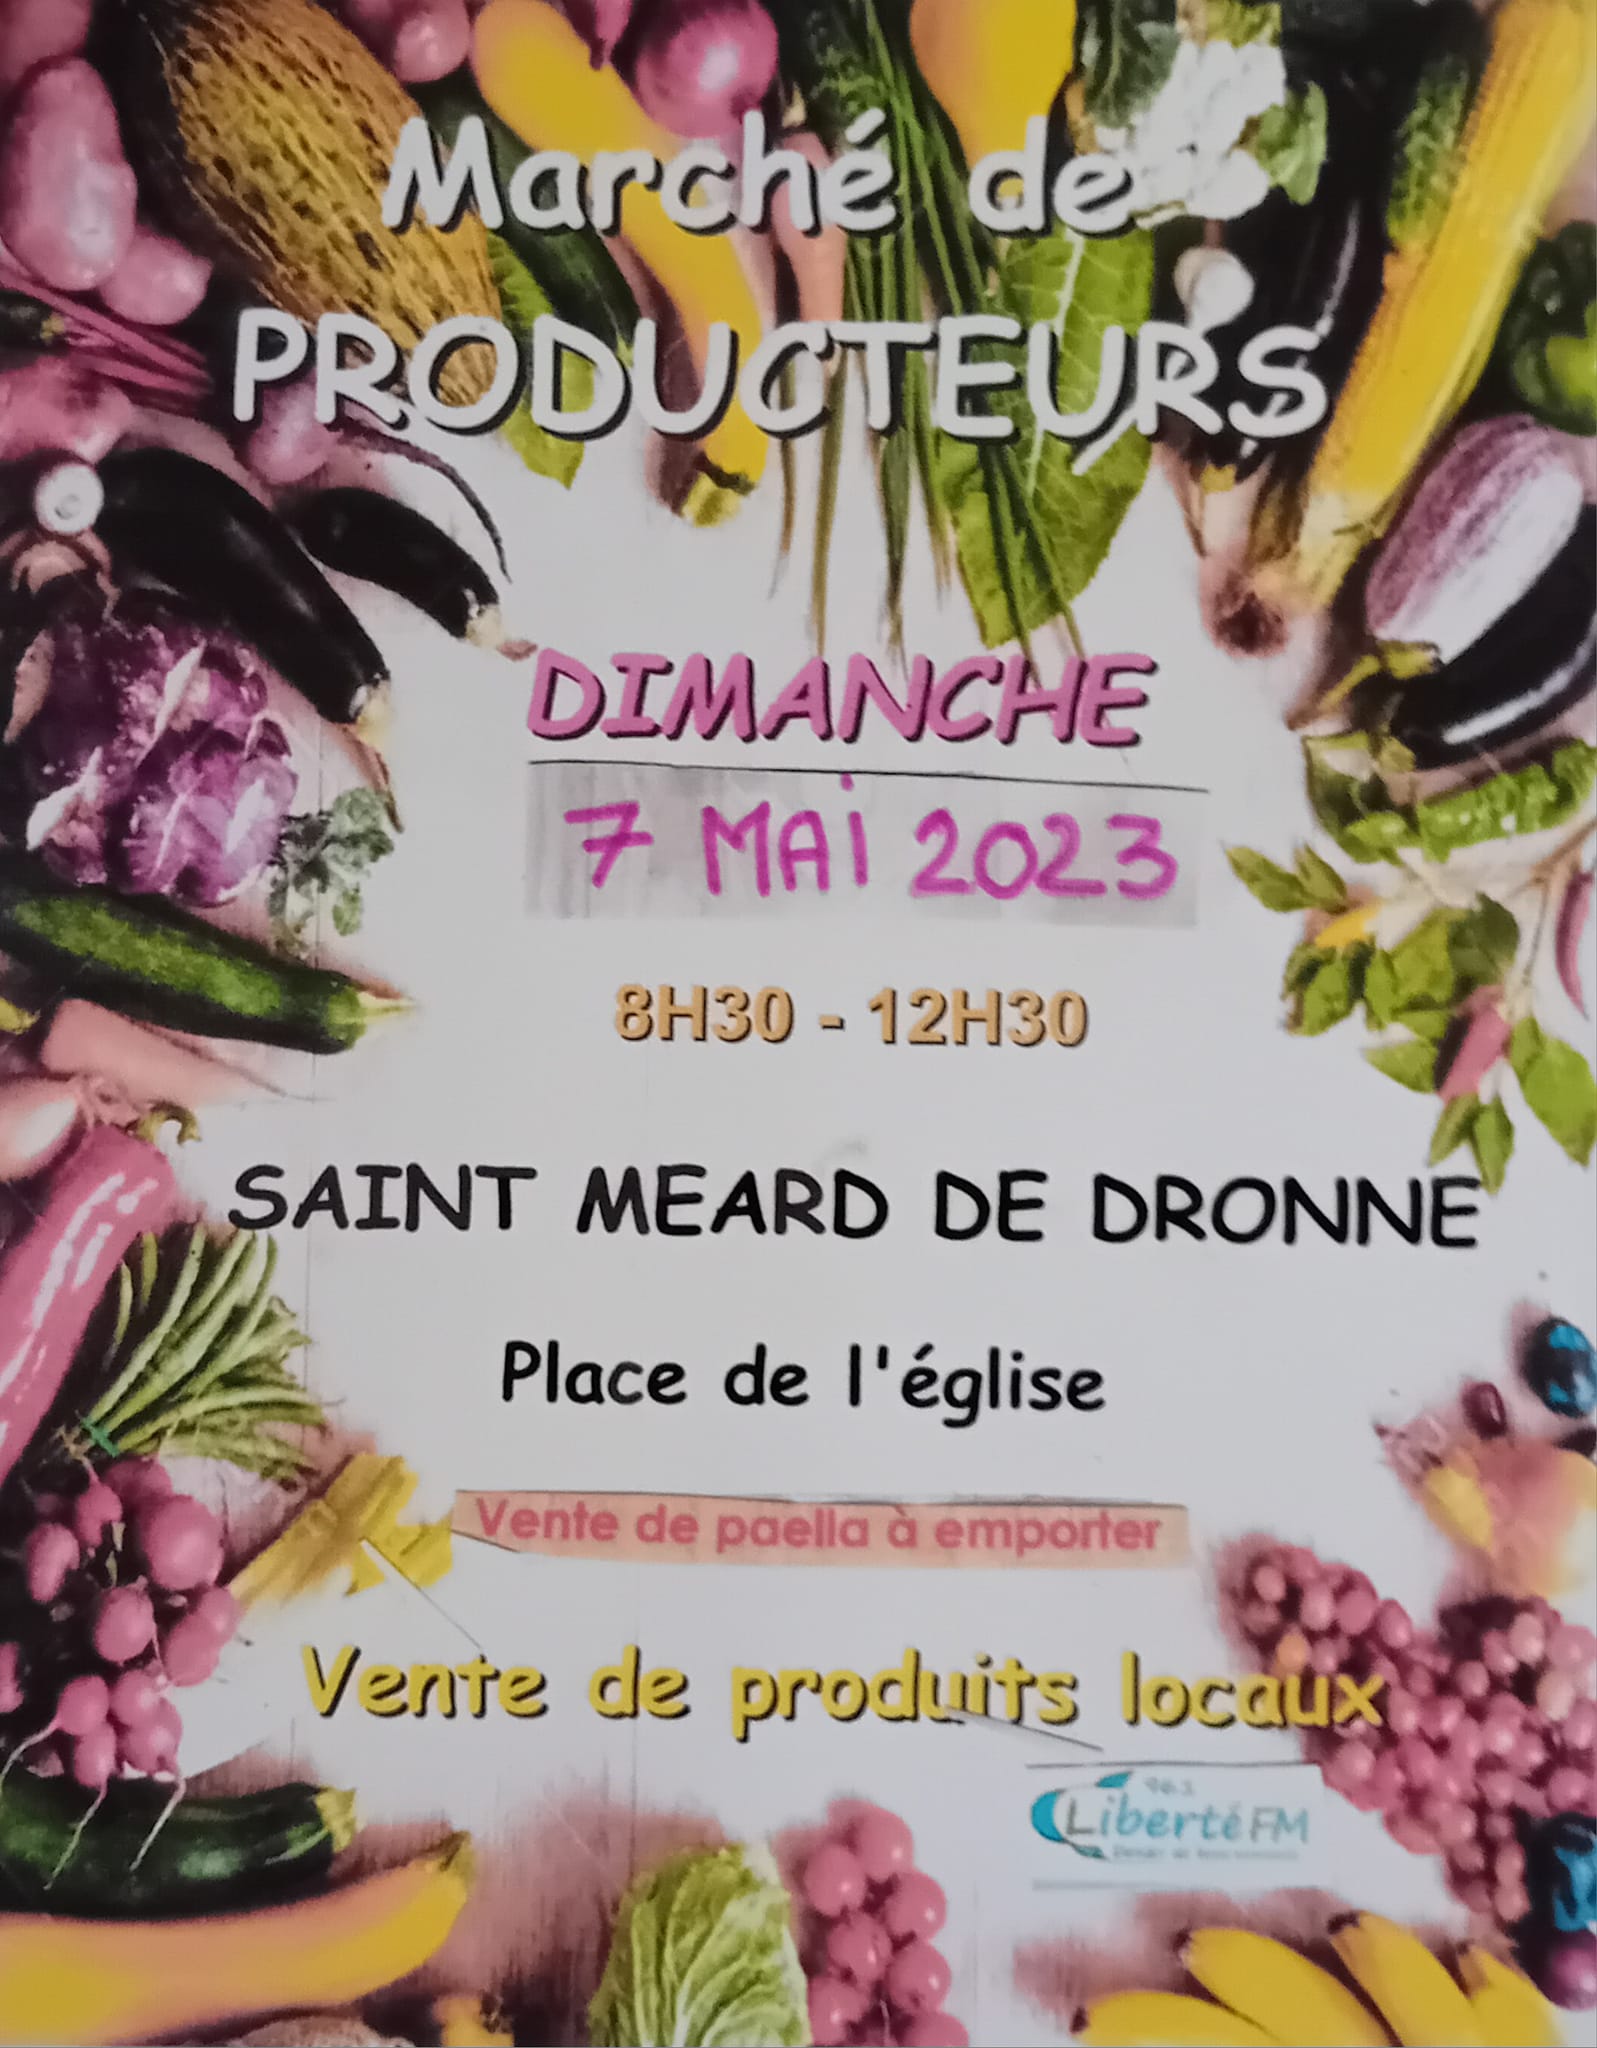 Saint-Méard-de-Dronne, marché de producteurs, dimanche 7 mai